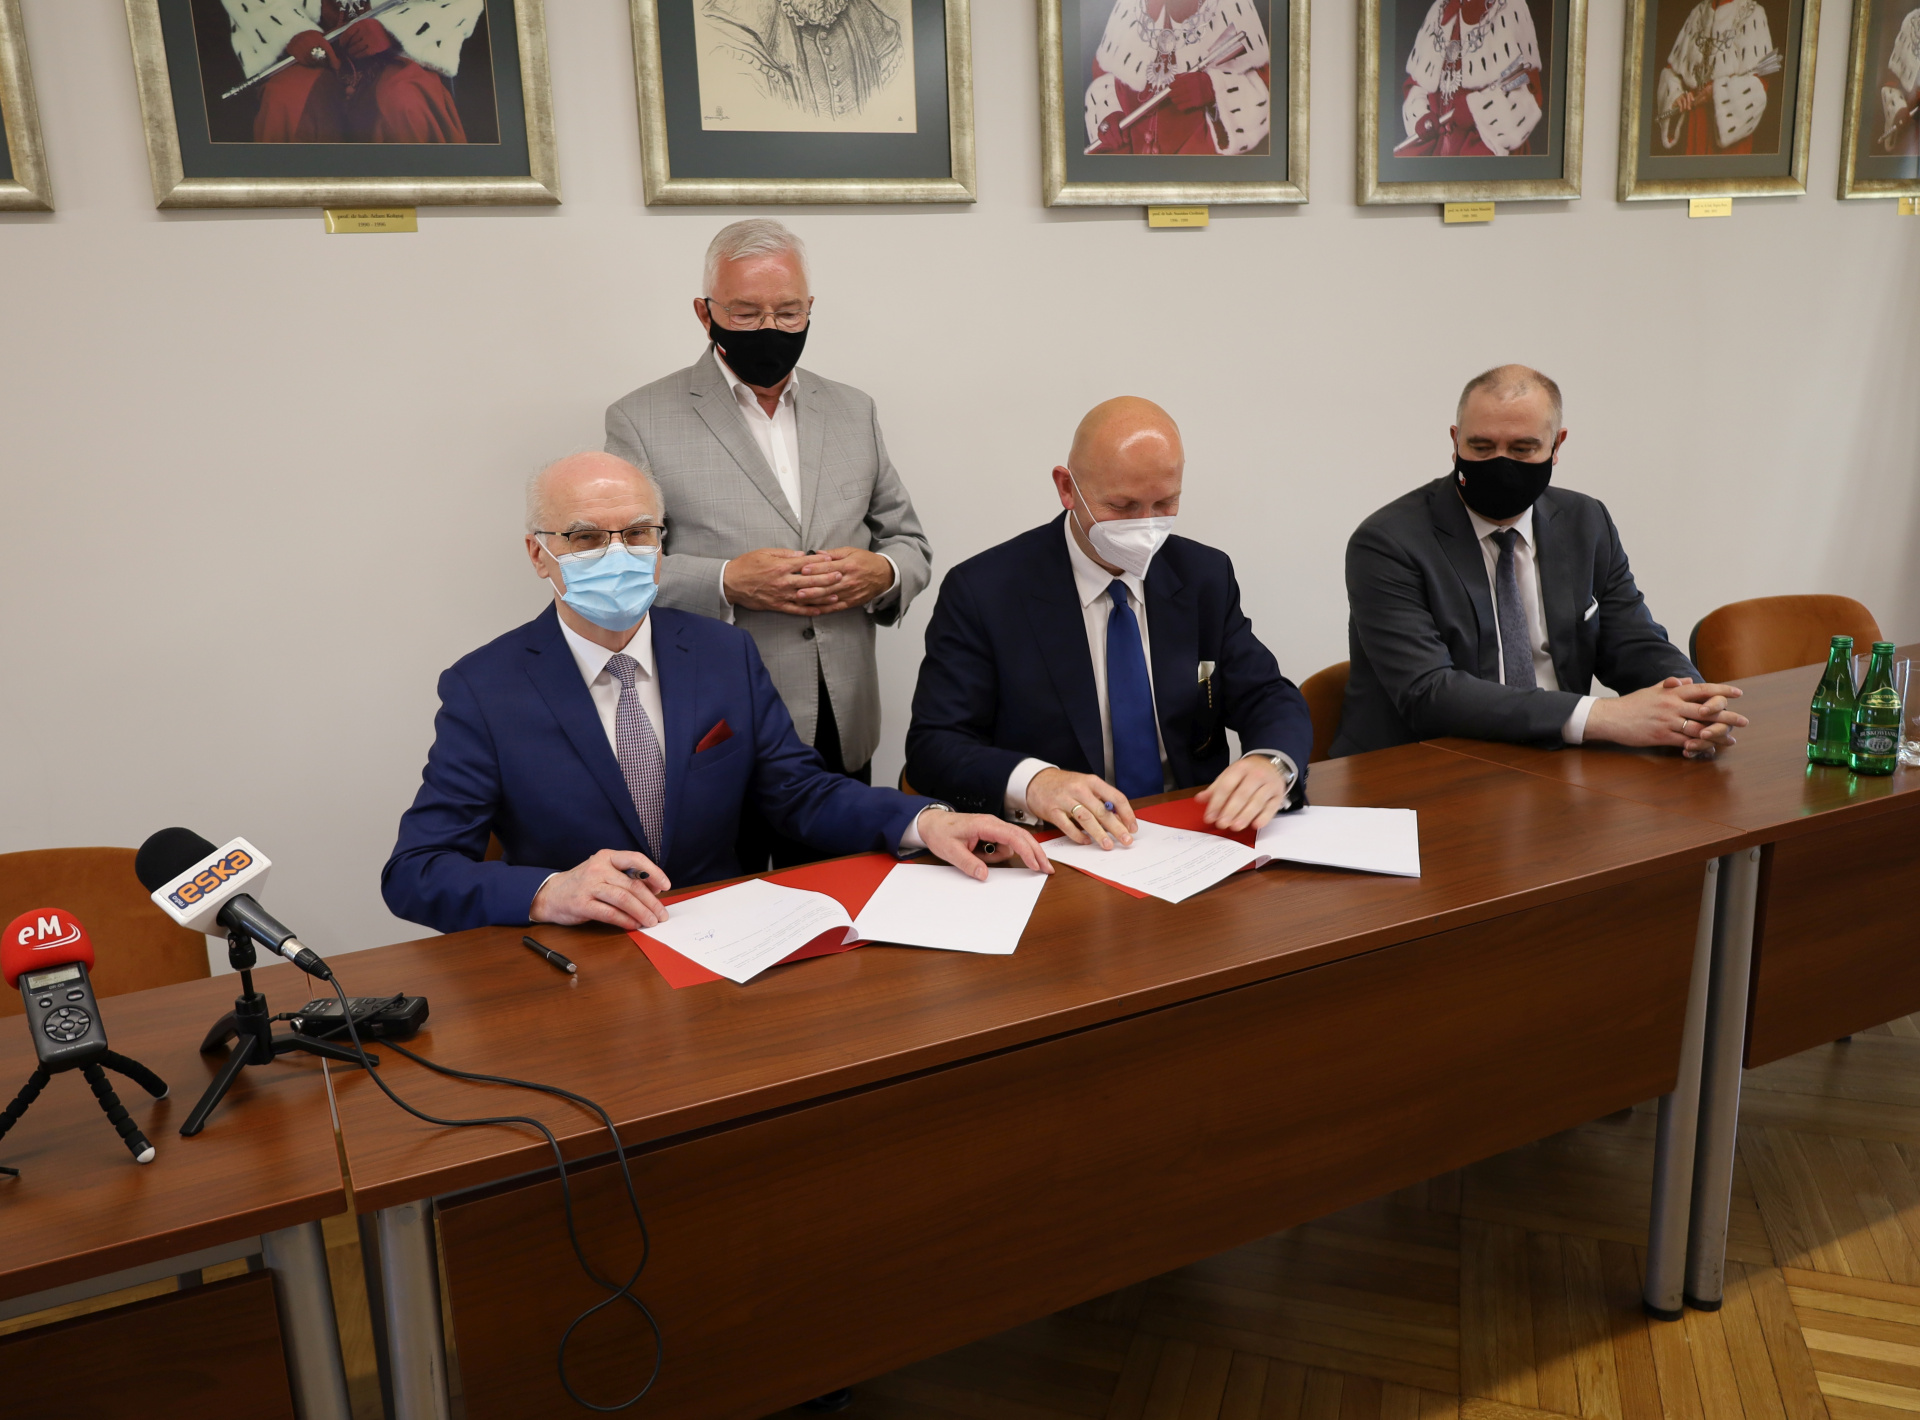 Porozumienie podpisują prof. Stanisław Głuszek, rektor UJK i Marcin Perz, prezes zarządu Specjalnej Strefy Ekonomicznej Starachowice, asystuje poseł Krzysztof Lipiec.